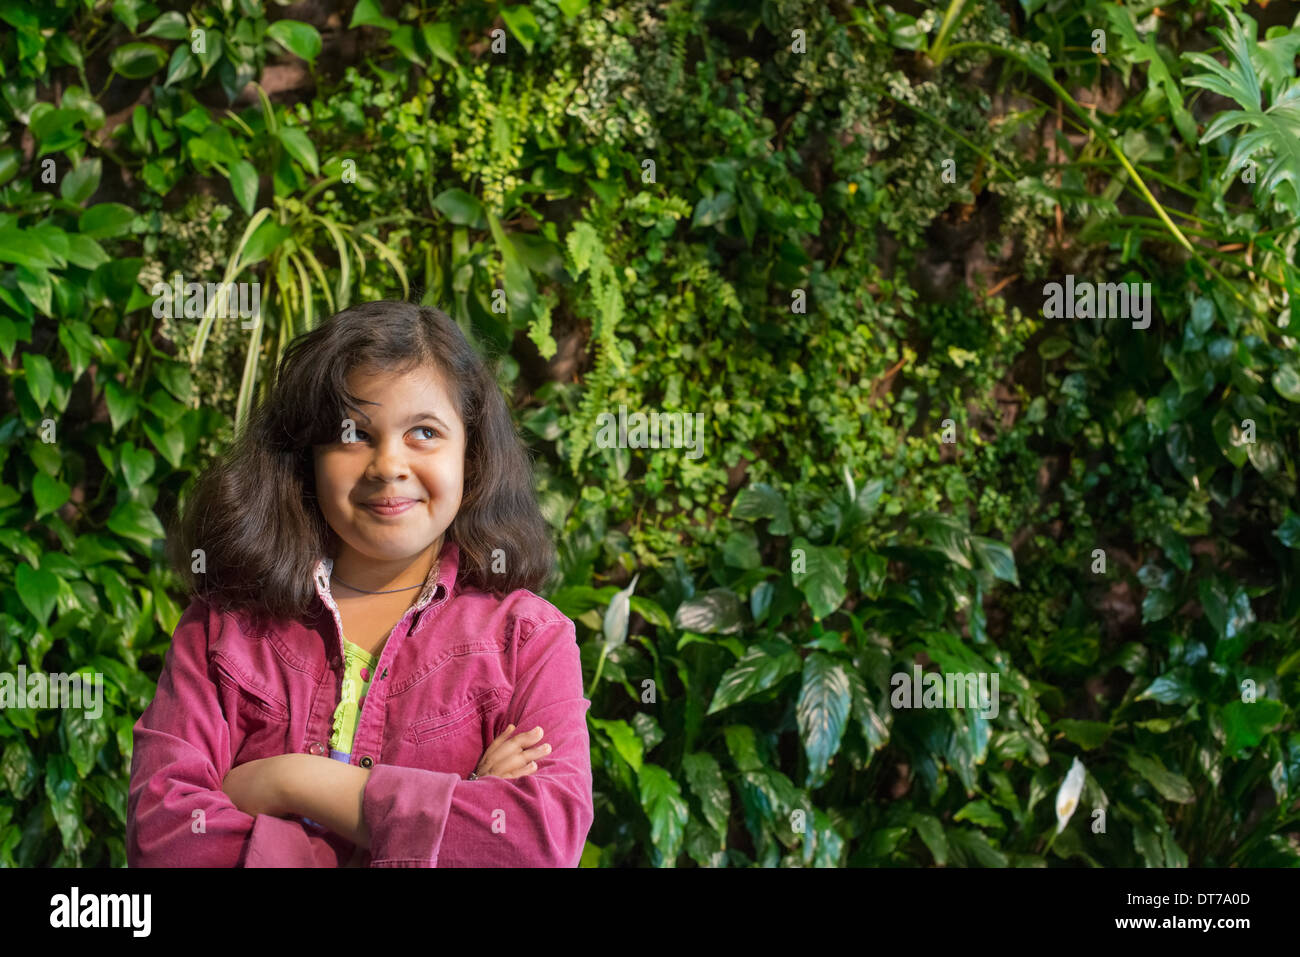 Una giovane ragazza in piedi di fronte ad una parete ricoperta di felci e piante rampicanti. Foto Stock